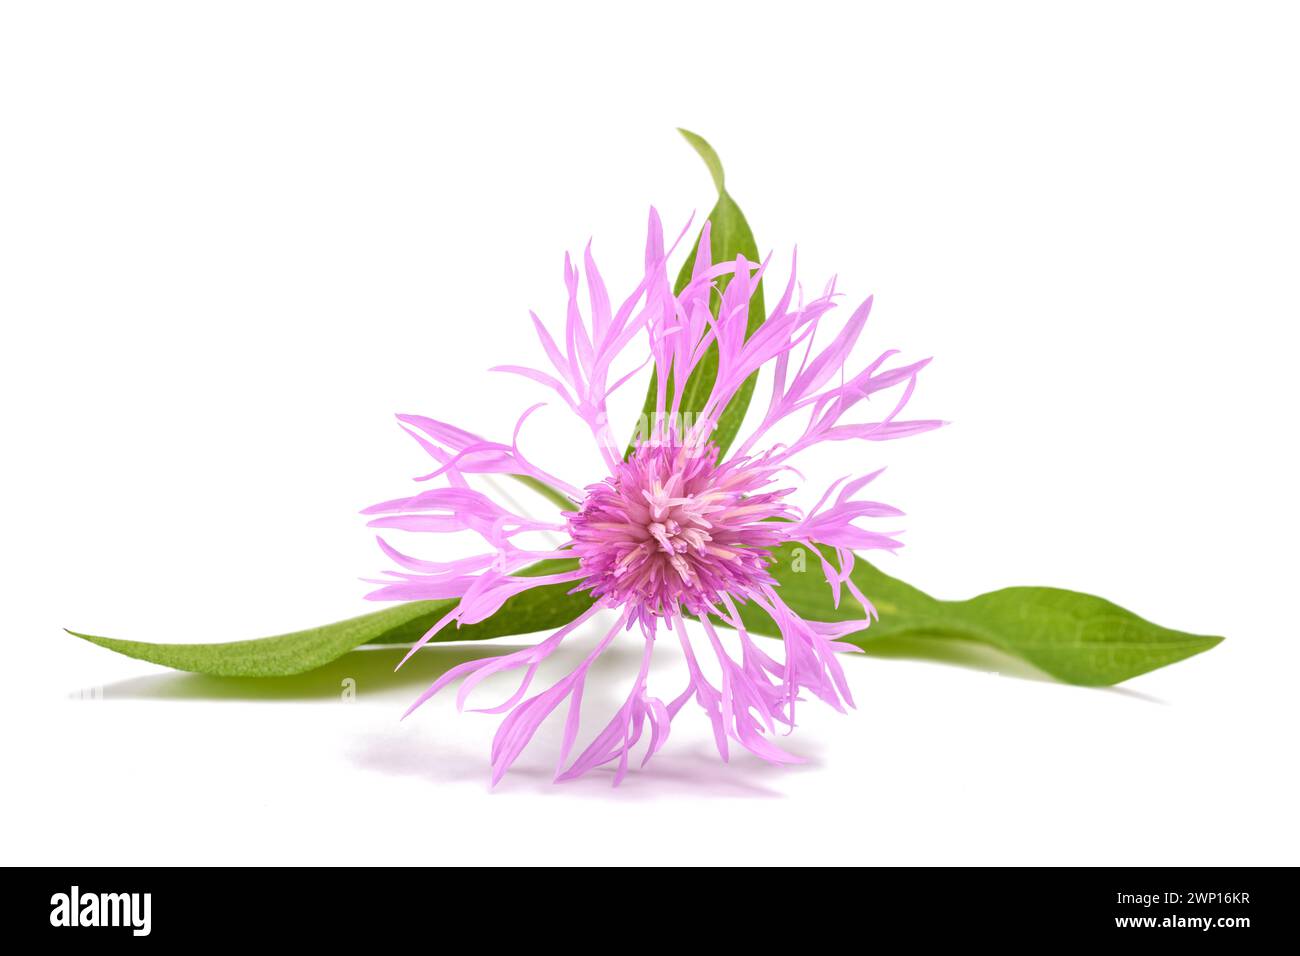 short fringed knapweed  flower isolated on white background Stock Photo